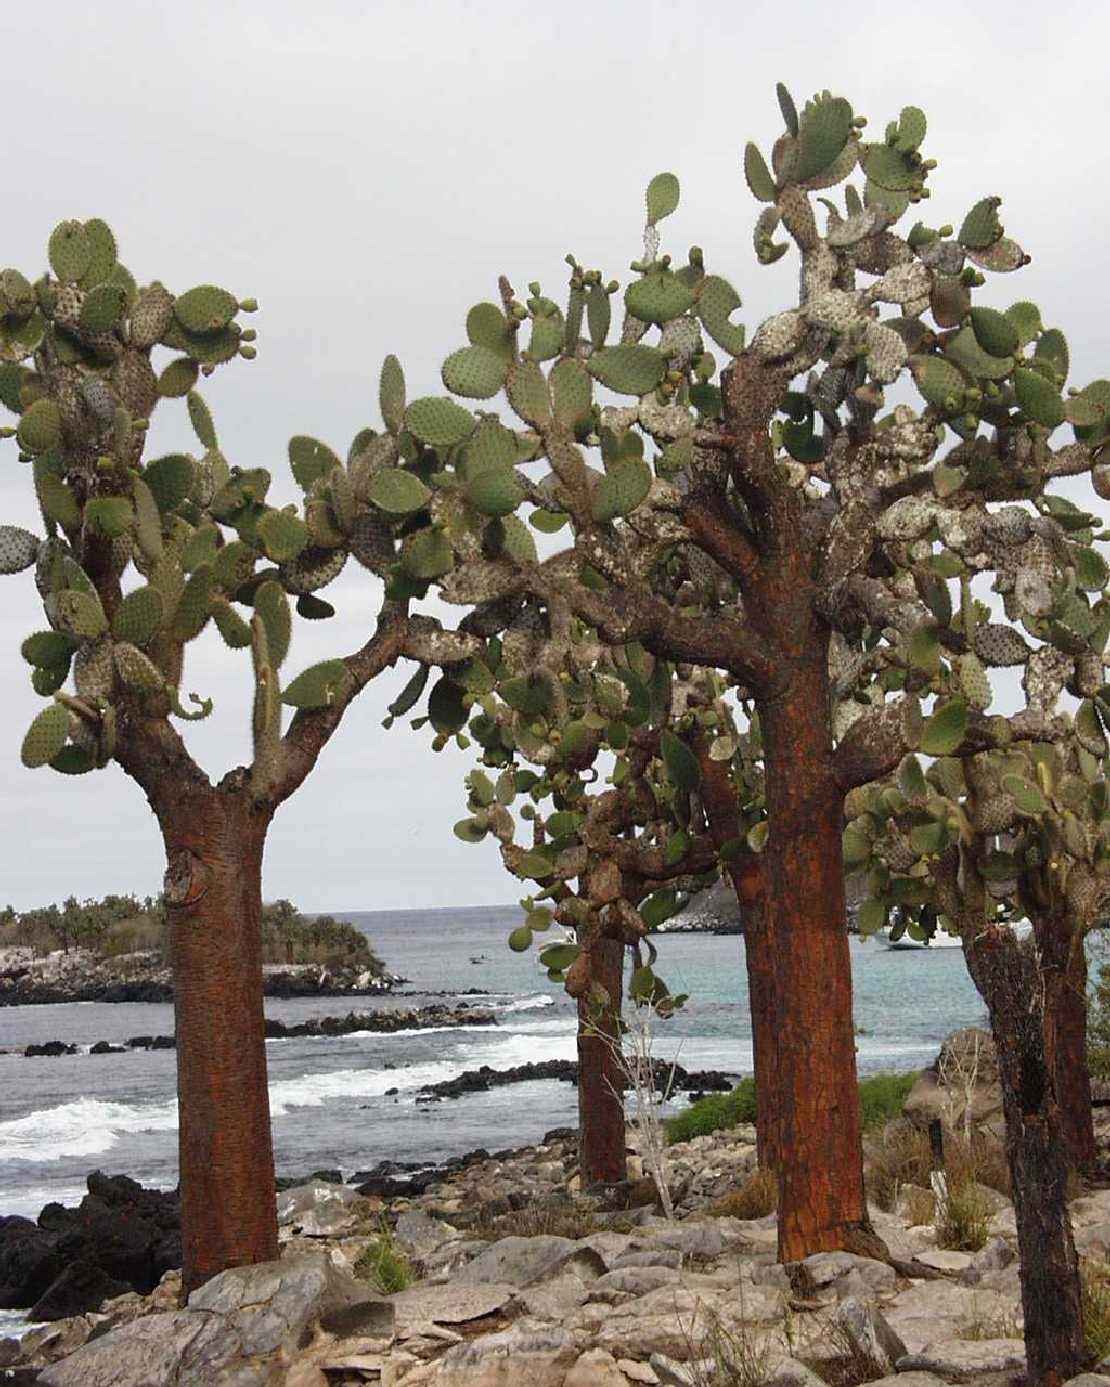 Galapagos Isla Santa Fe Opuntia Galapageia, endemische Opuntienbume